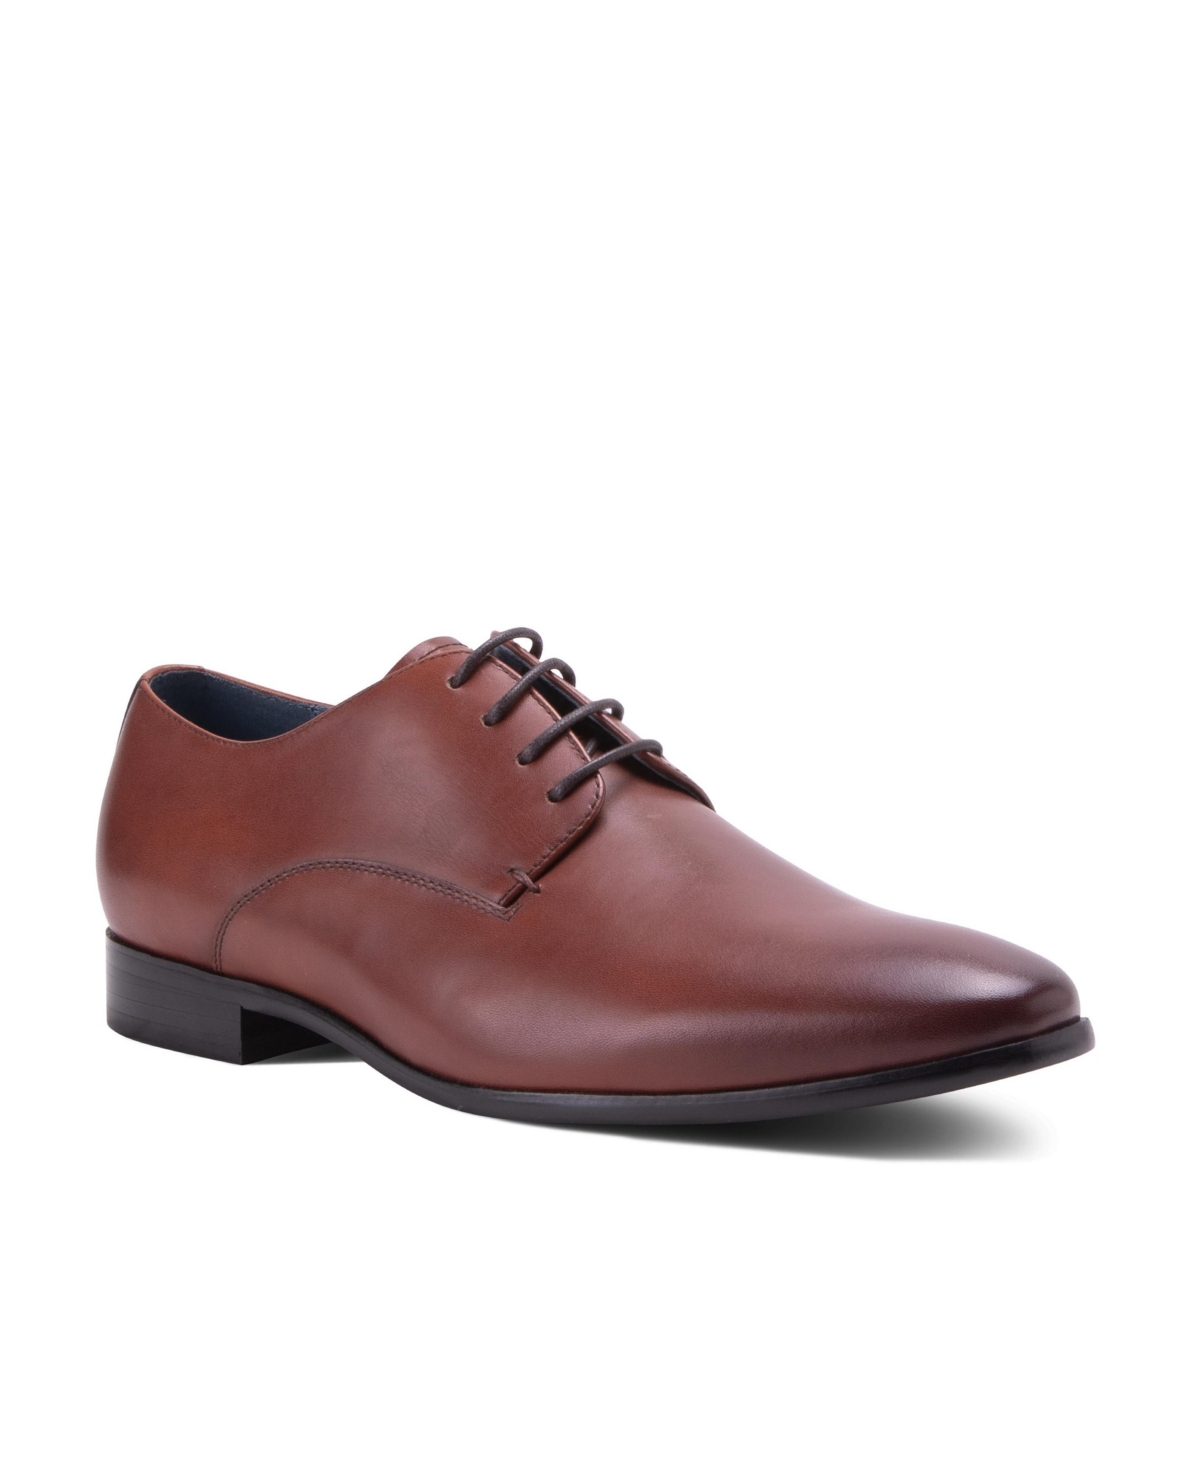 Men's Fairfax Dress Lace-Up Plain Toe Derby Leather Shoes - Chestnut